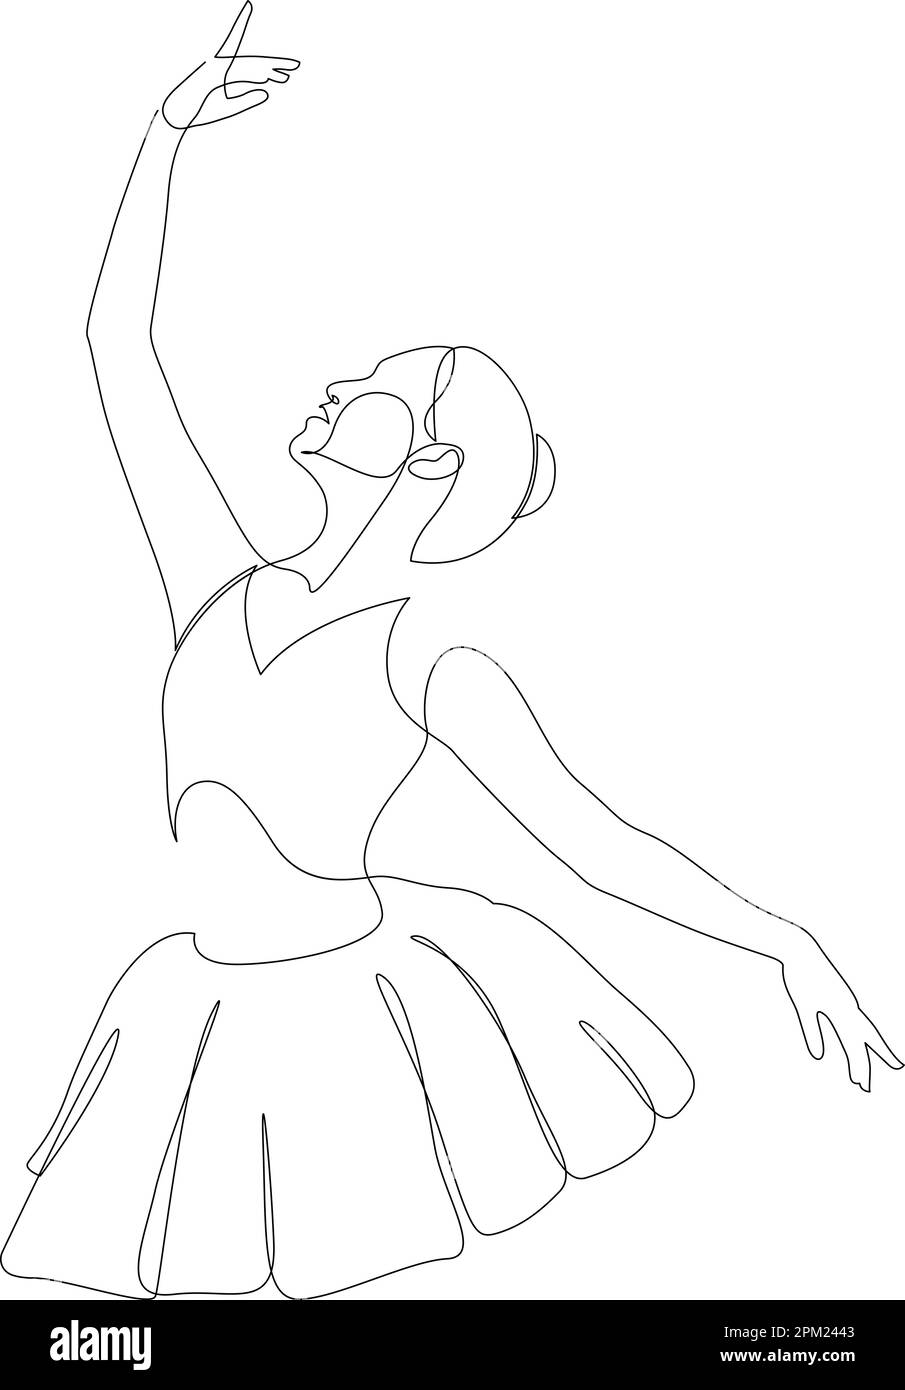 Dessin de ligne continu de Ballerina en mouvement. Dessin de la ligne noire du danseur de ballet sur fond blanc. Illustration vectorielle Illustration de Vecteur